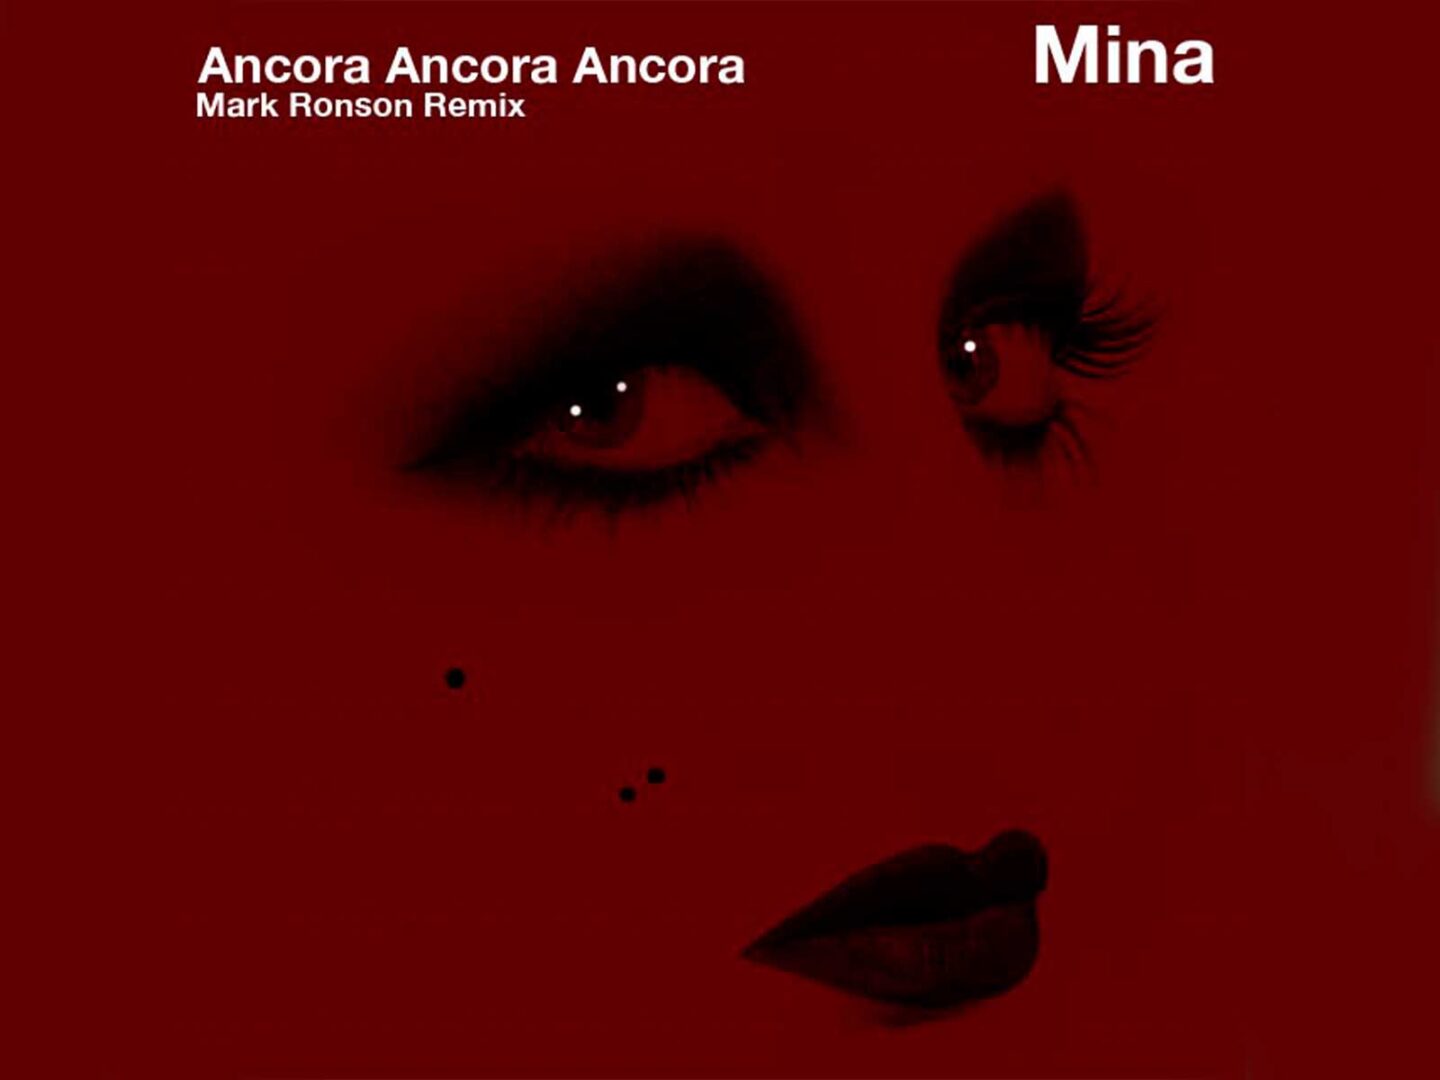 Marc Ronson’s ‘Mina Ancora, ancora, ancora’ remix for Gucci is here